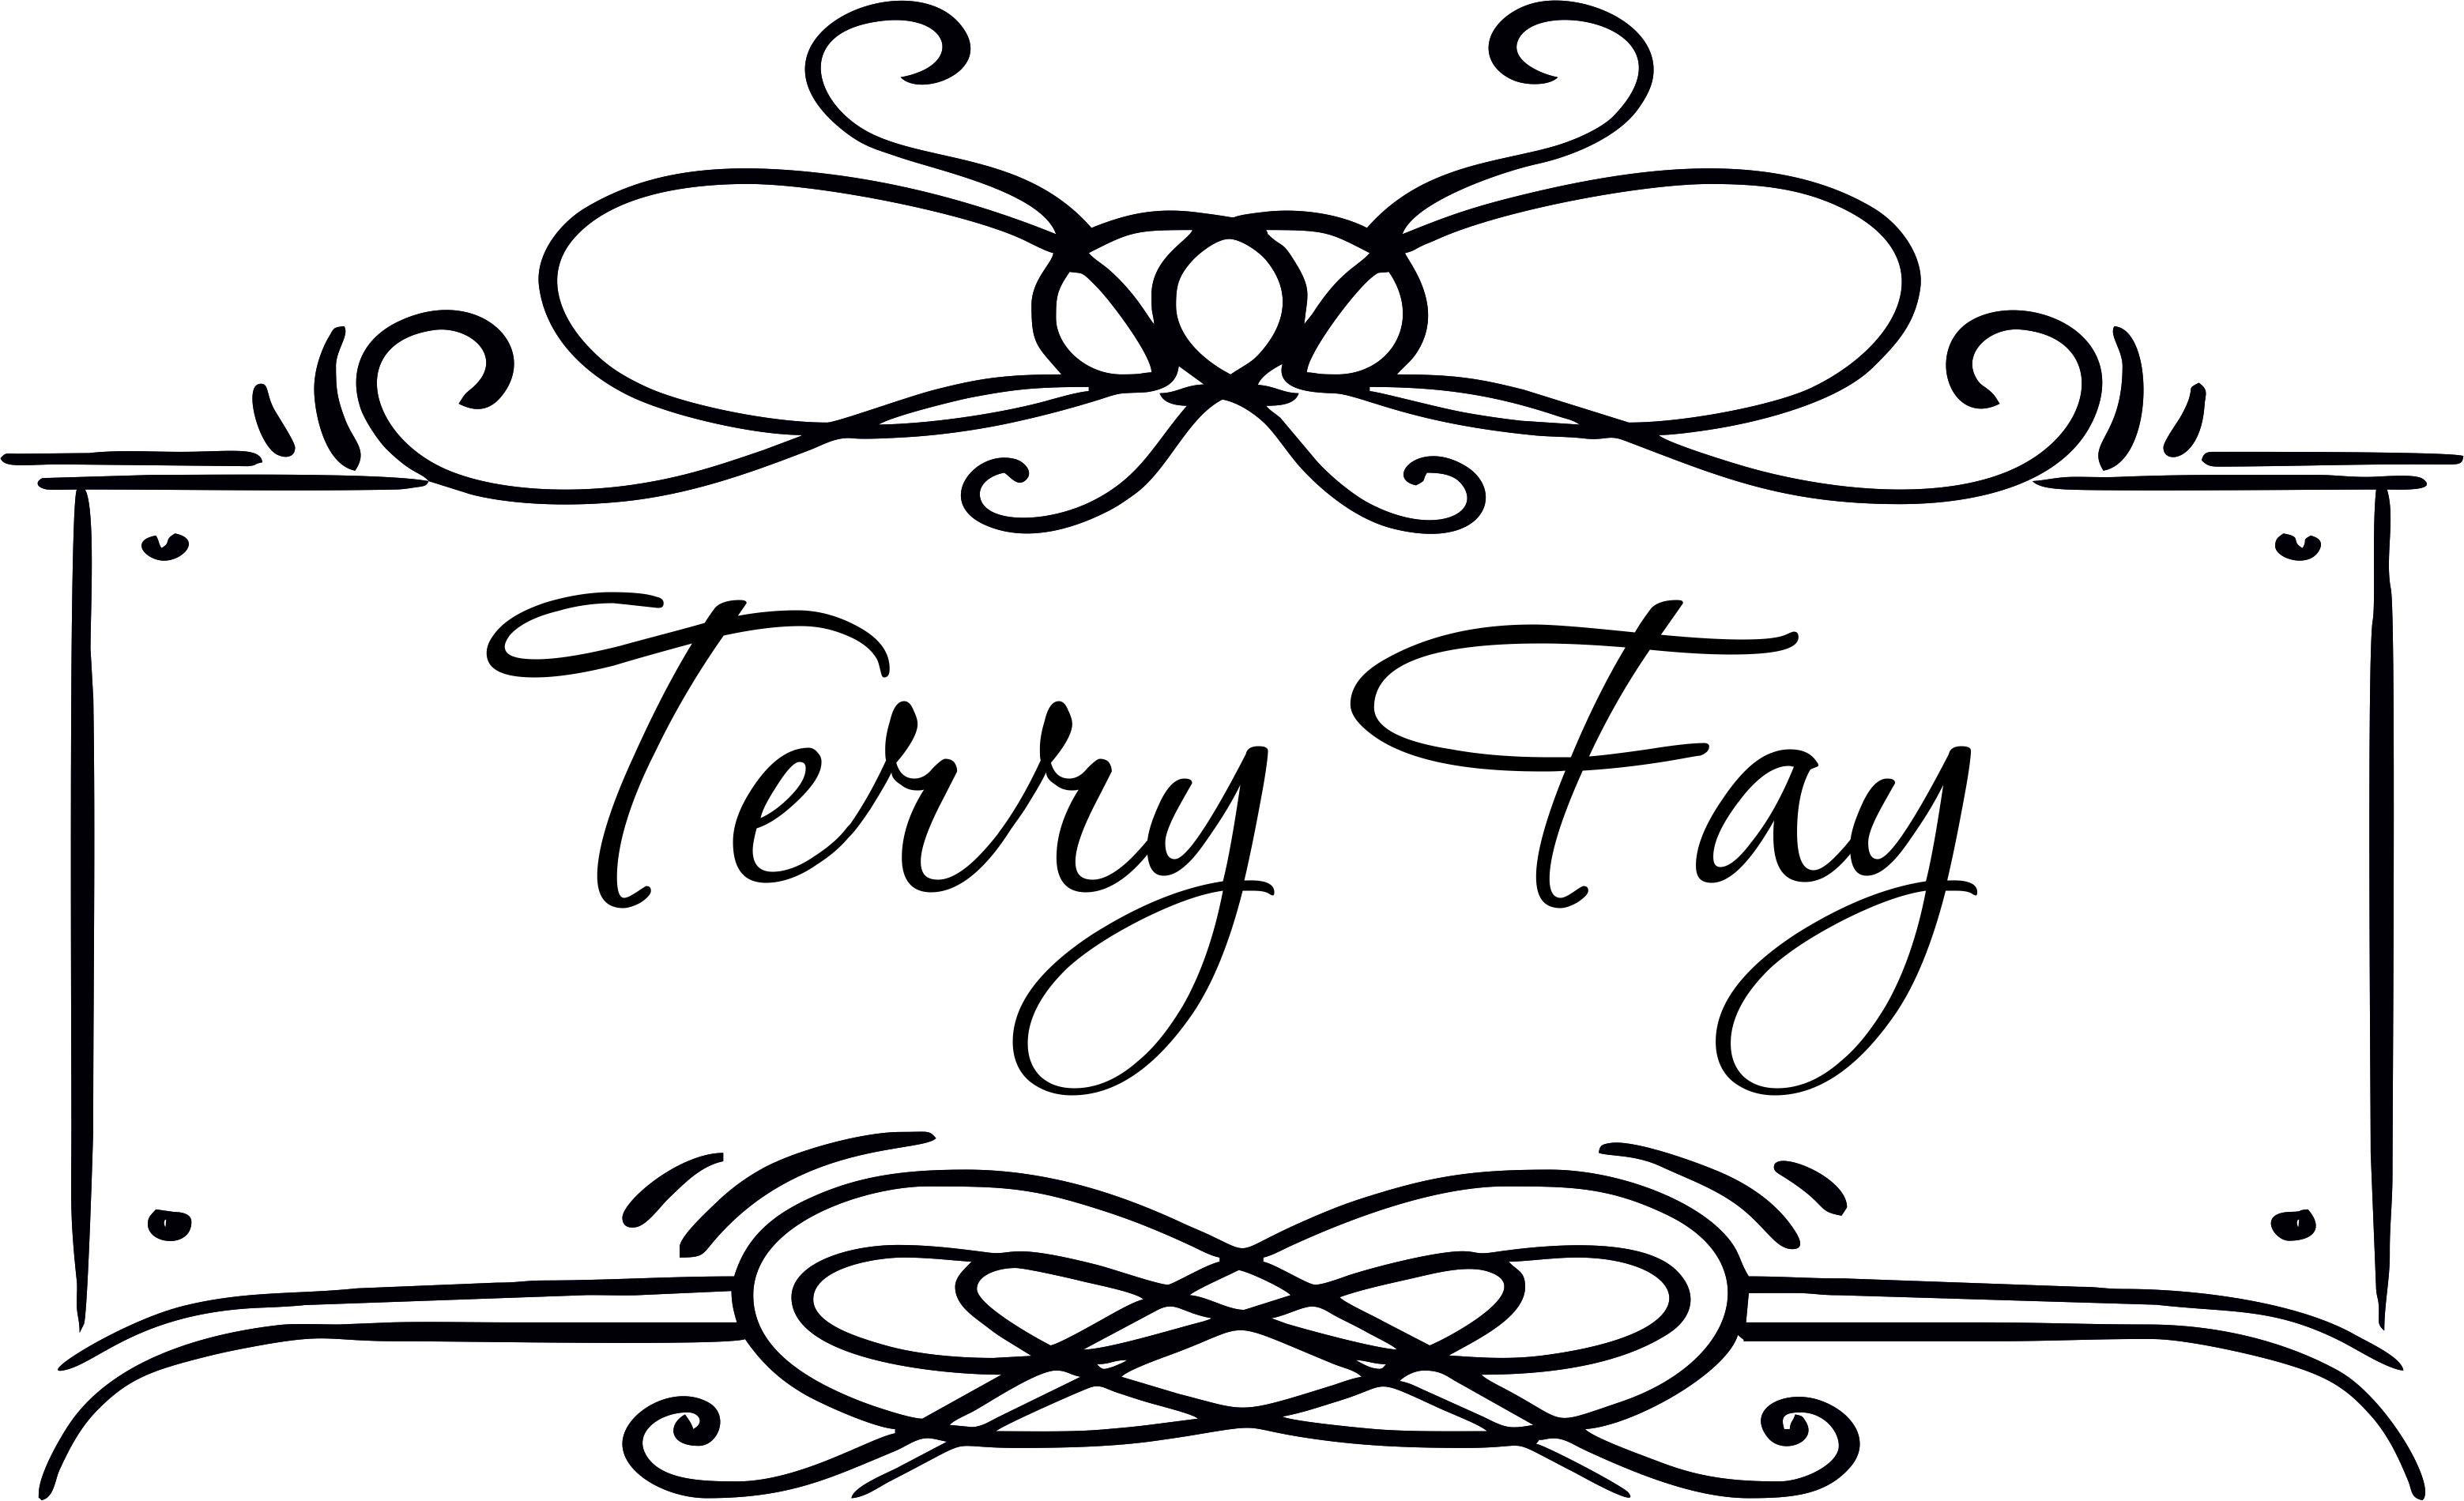 Terry Fay